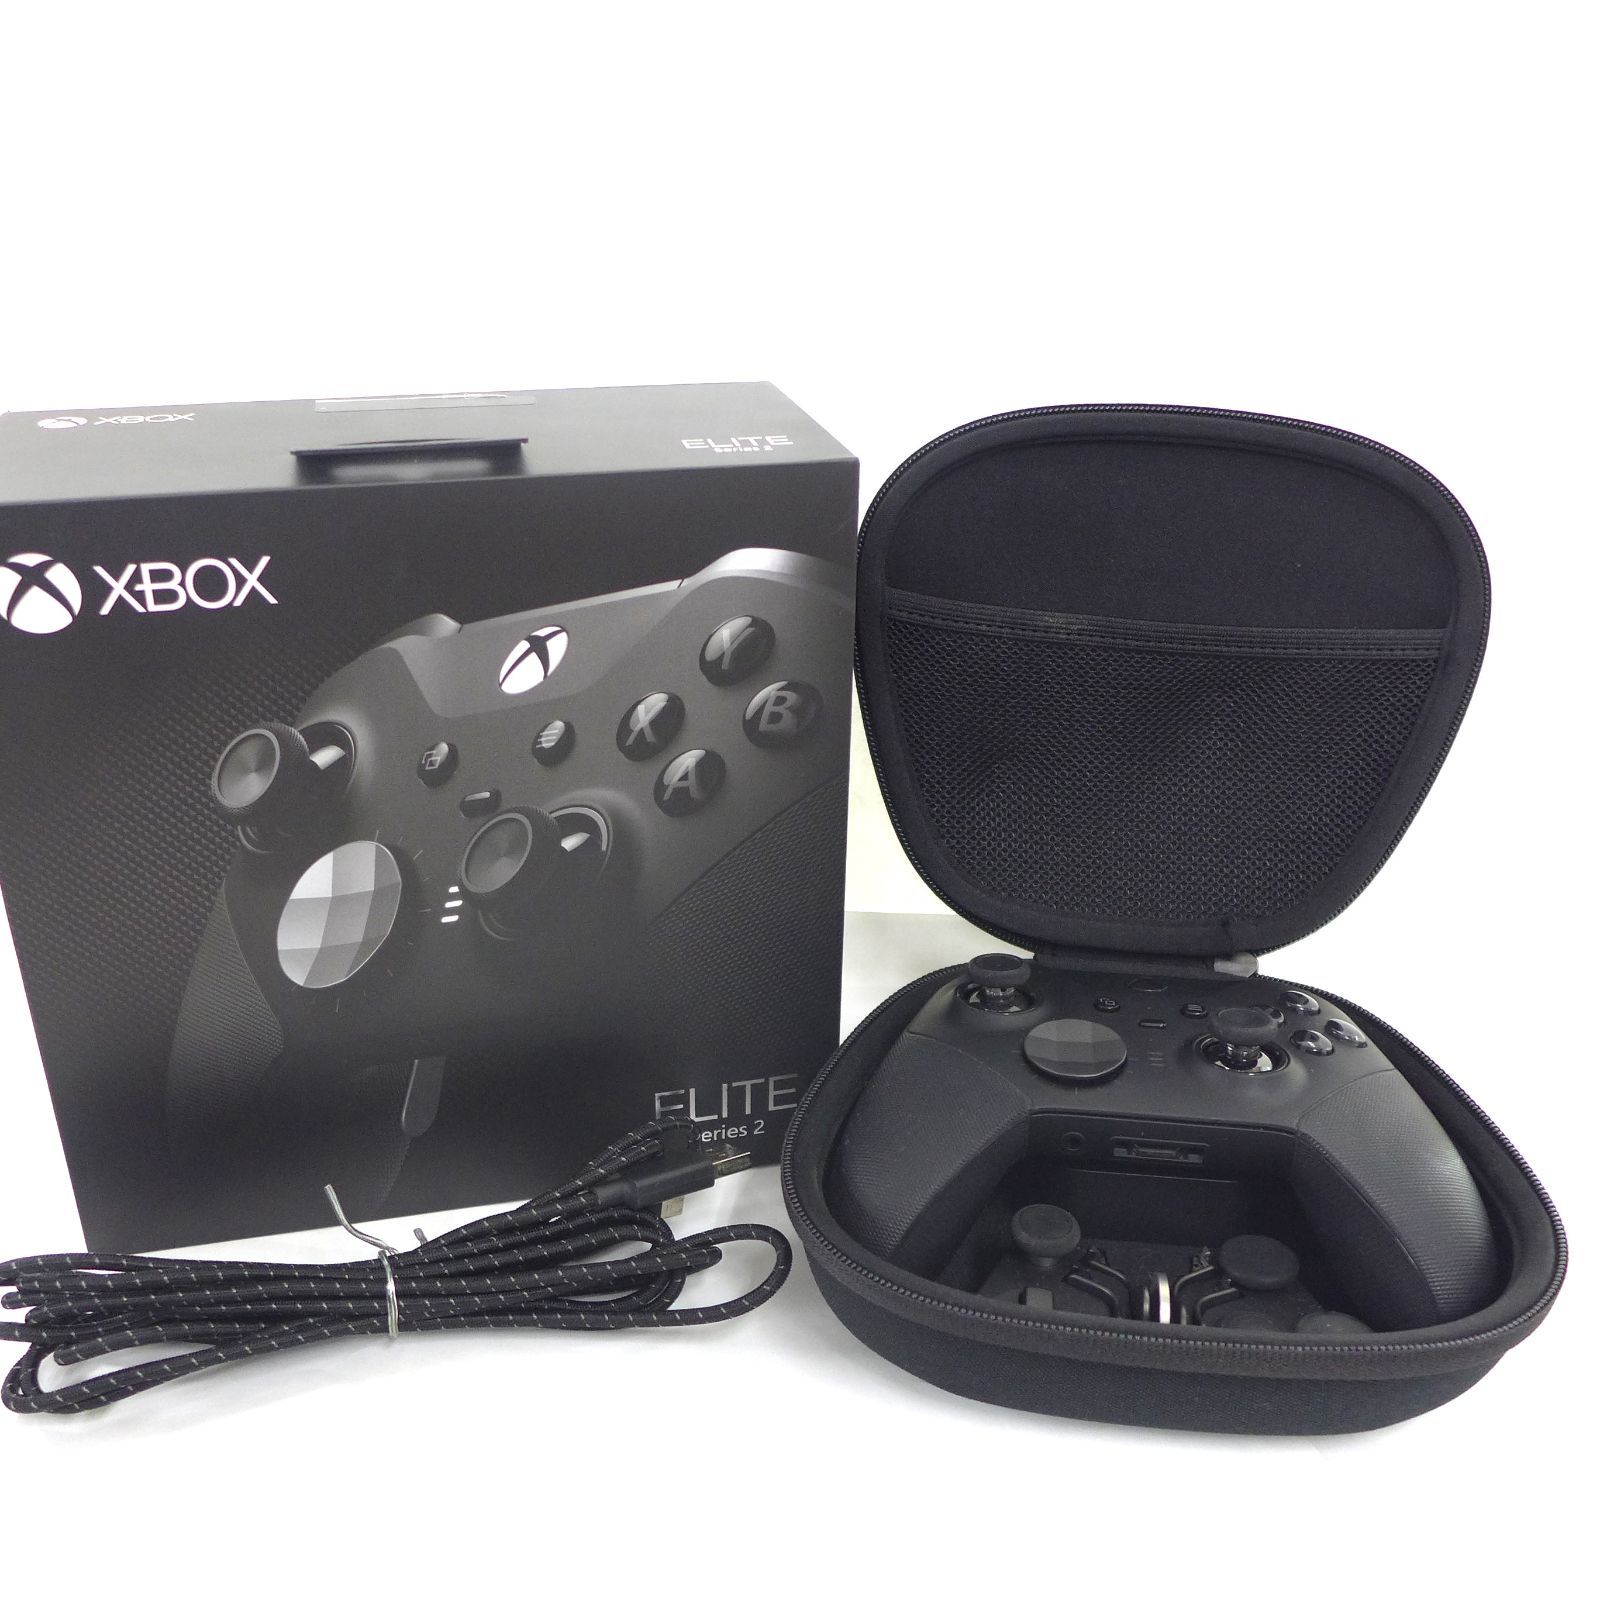 Xbox Elite ワイヤレス コントローラー Series 2 FST-00009 中古 XBOX 